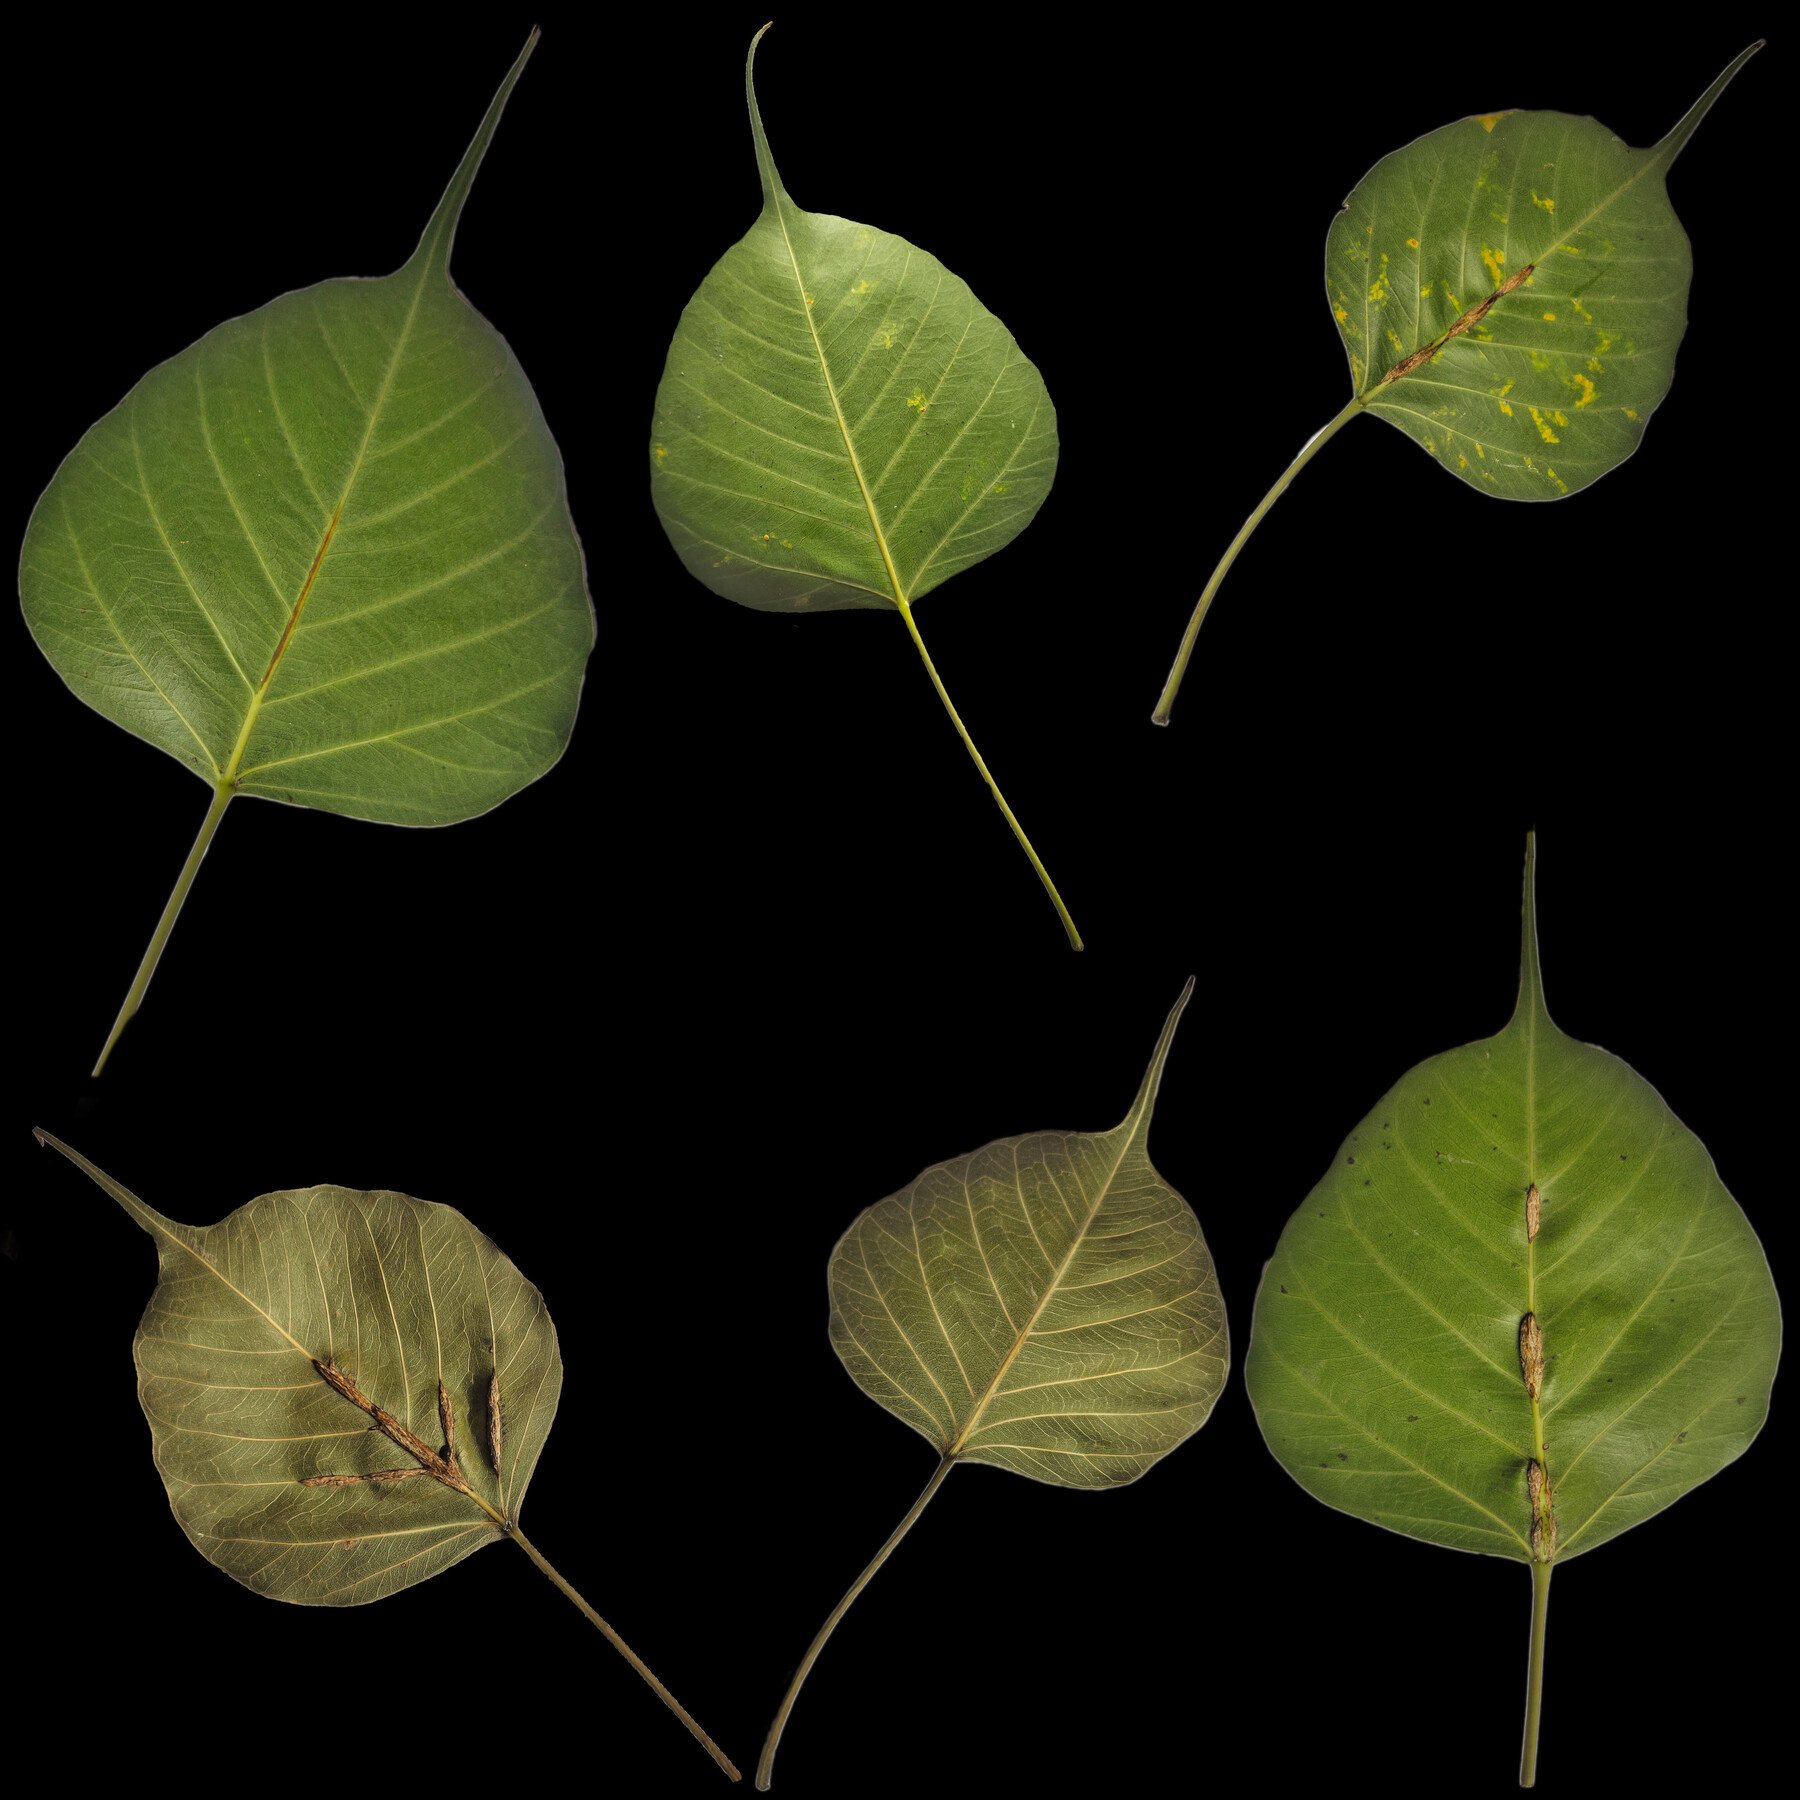 peepal tree leaves